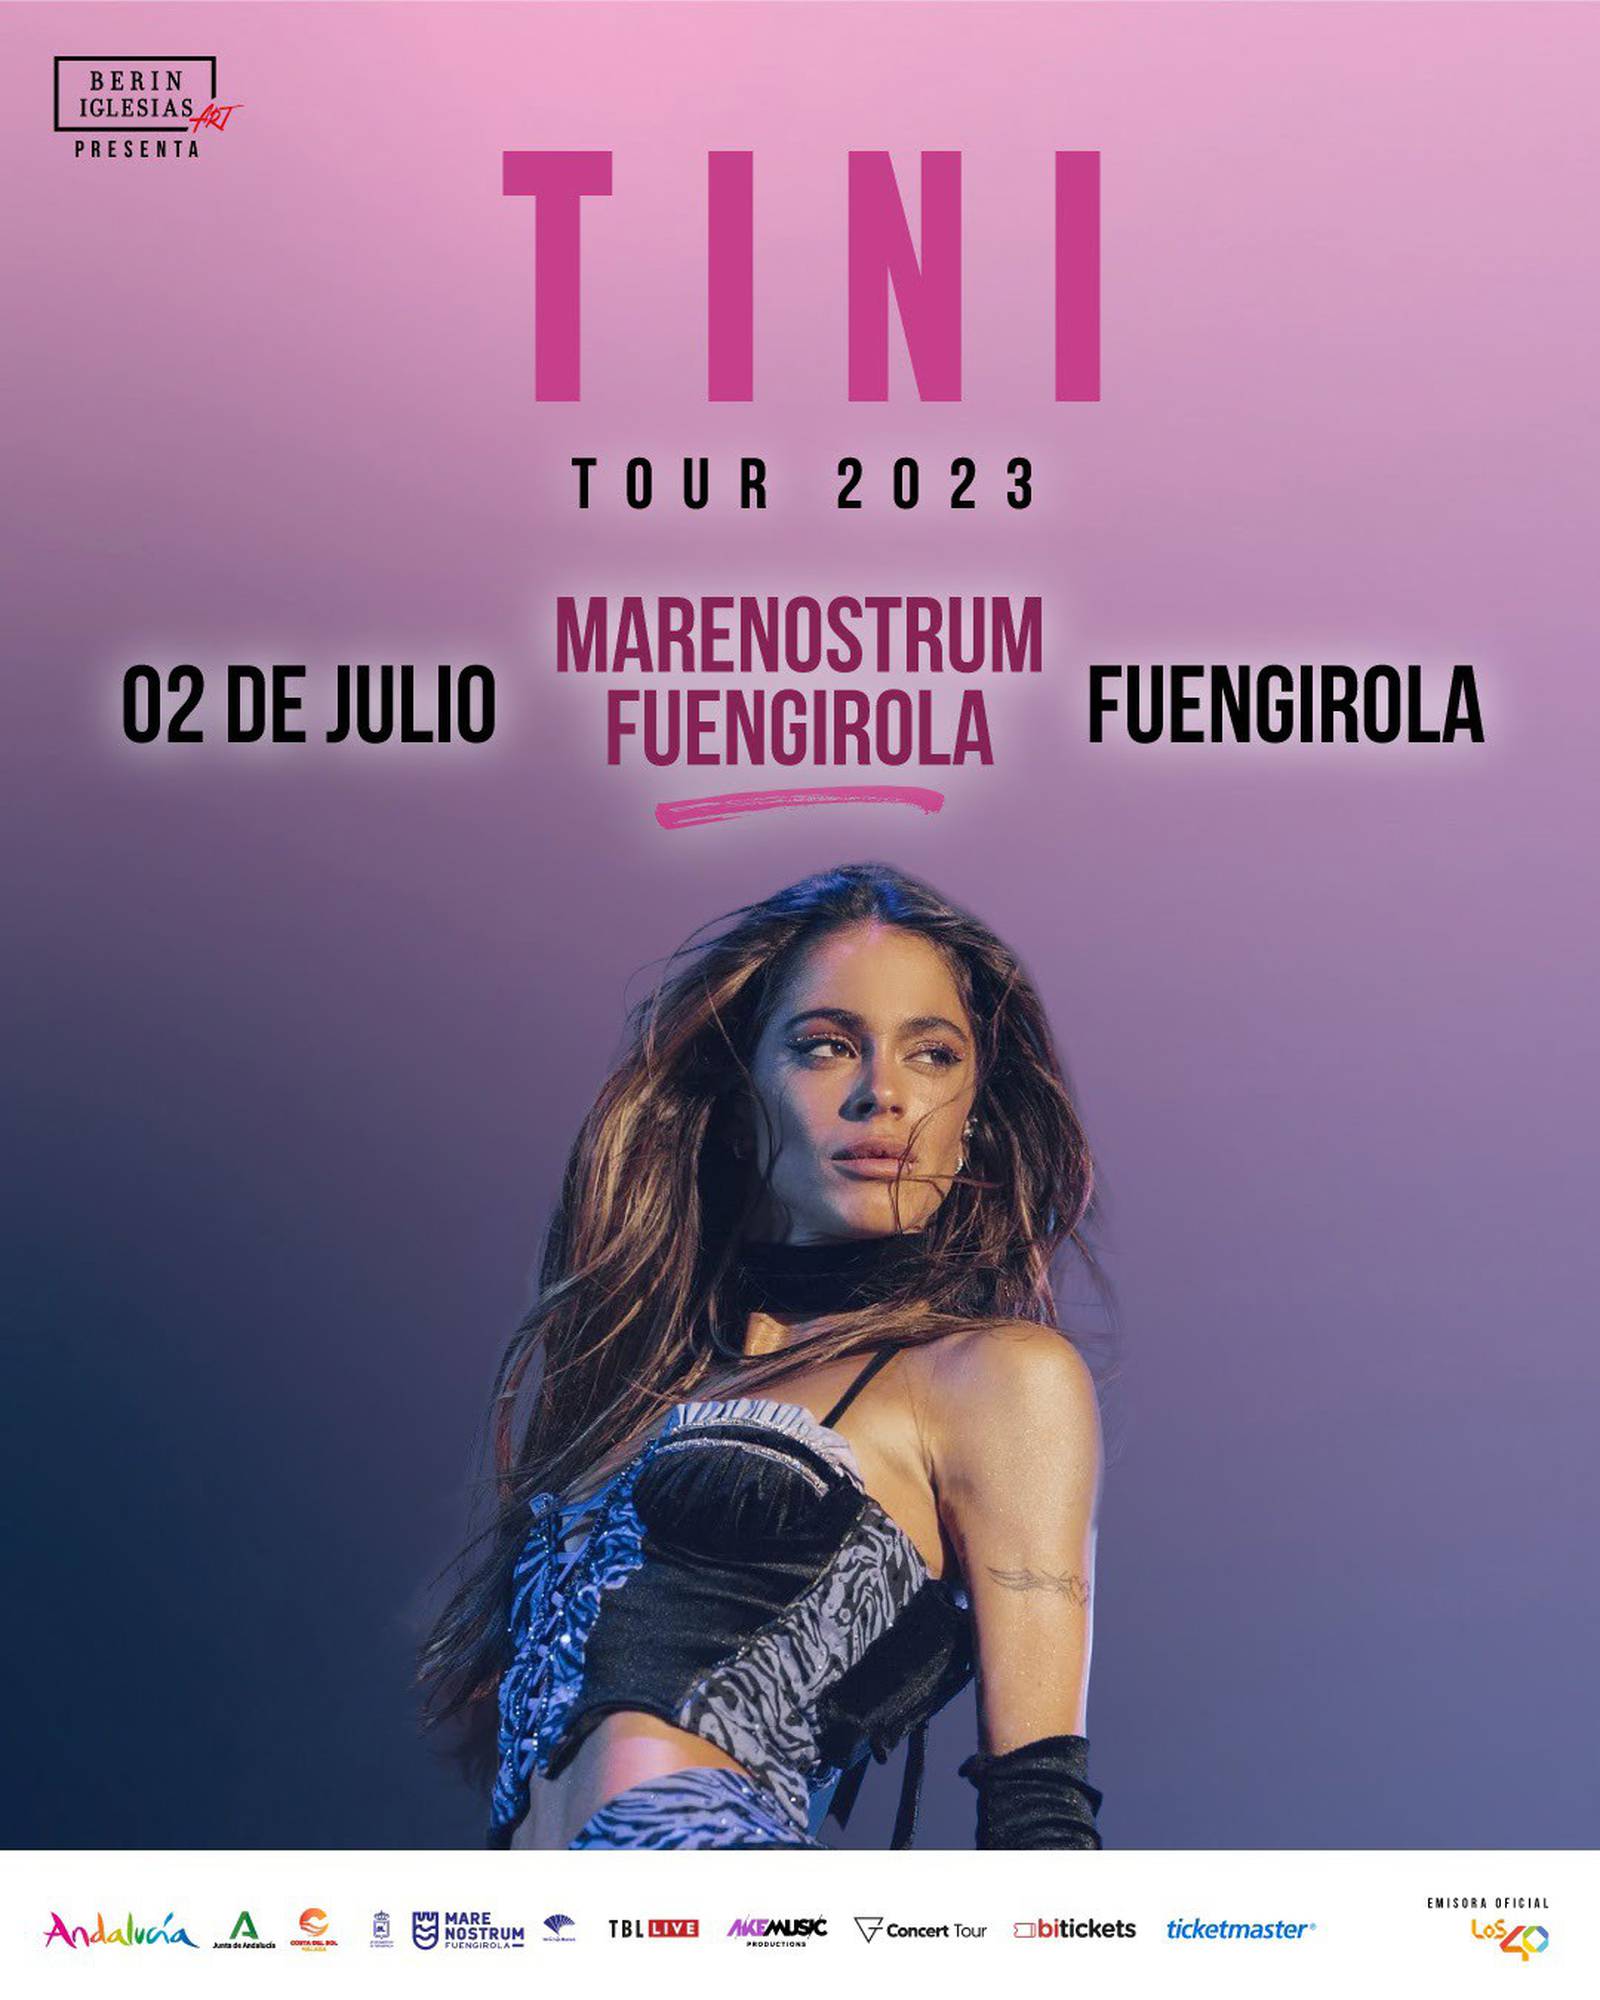 La Actriz Cantante Y Compositora Tini Arranca El 24 De Junio En El Coliseum De A Coruña Su Gira 